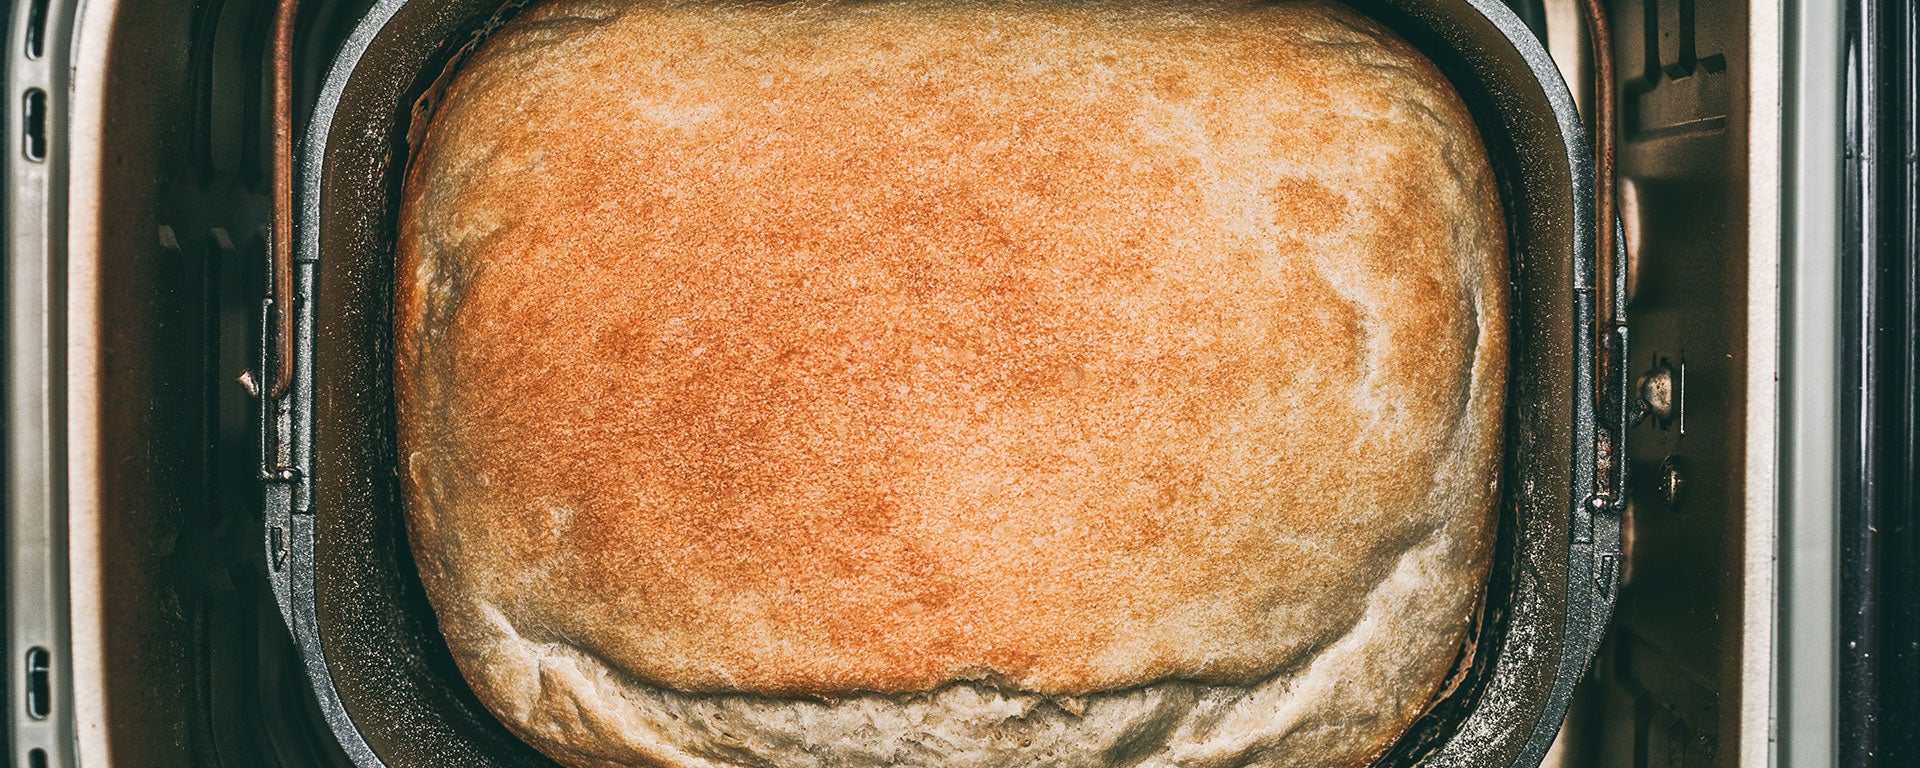 Bread-Machine_Header.jpg